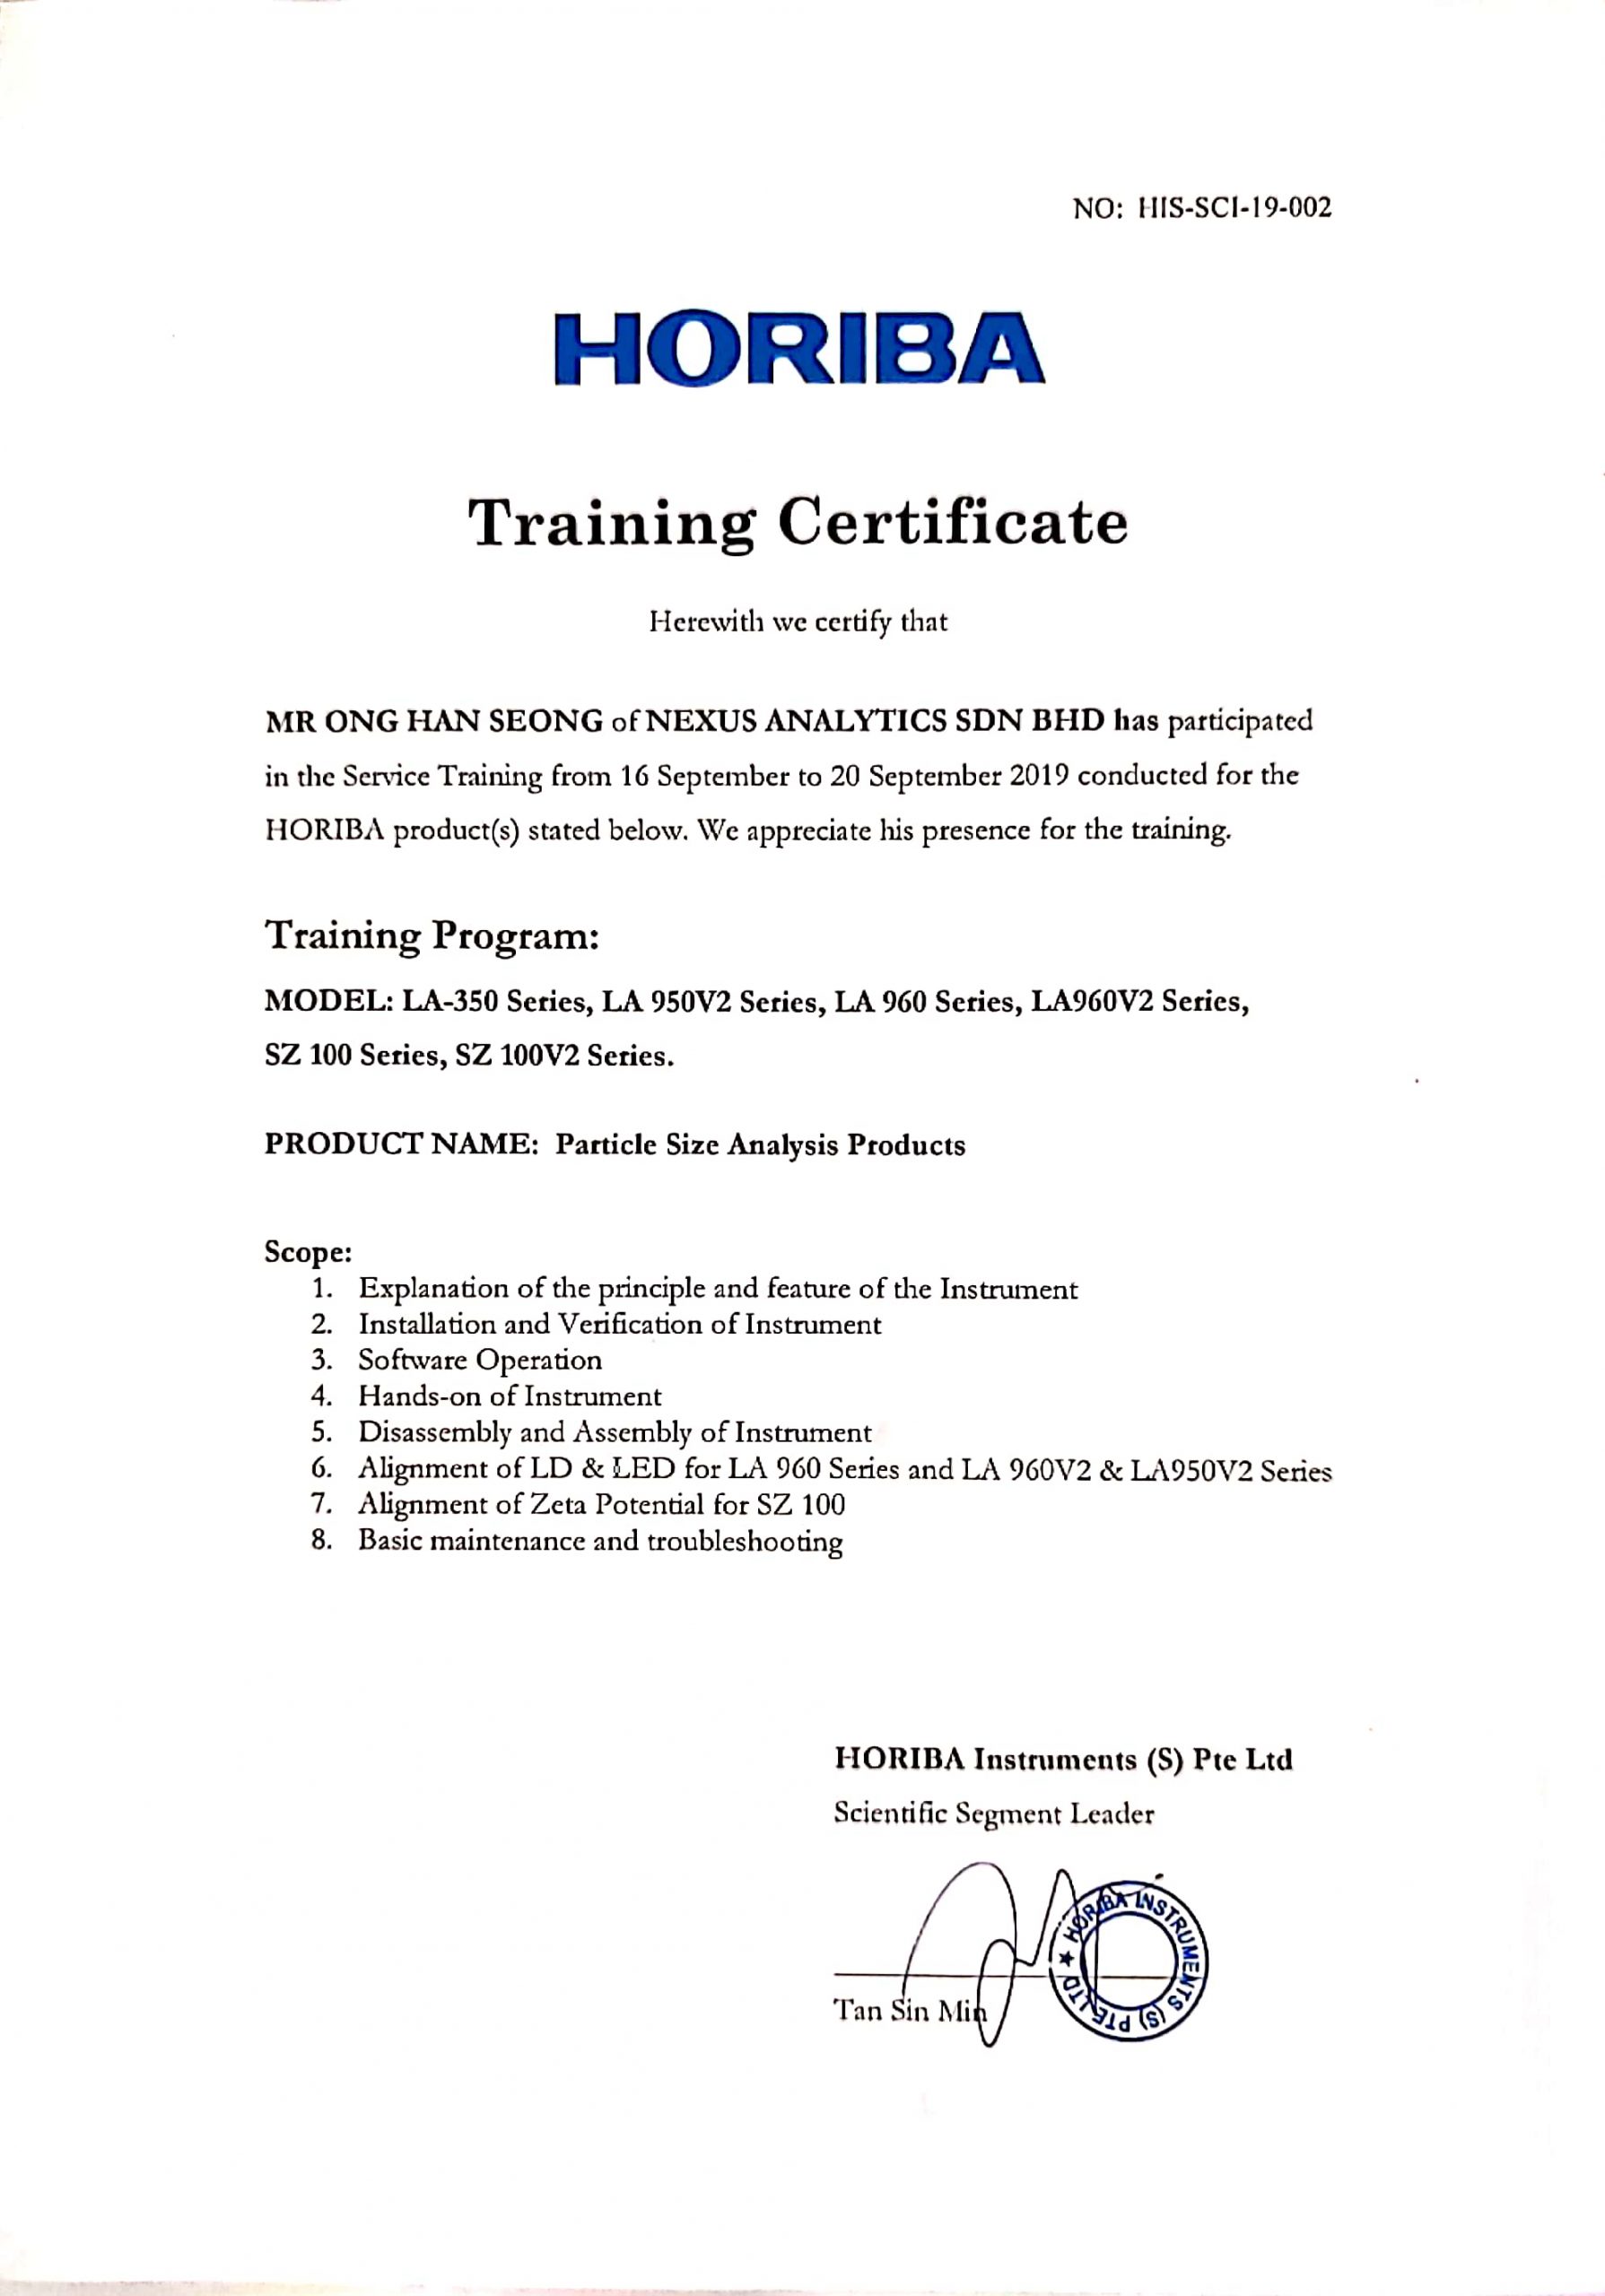 Horiba Training Certificate